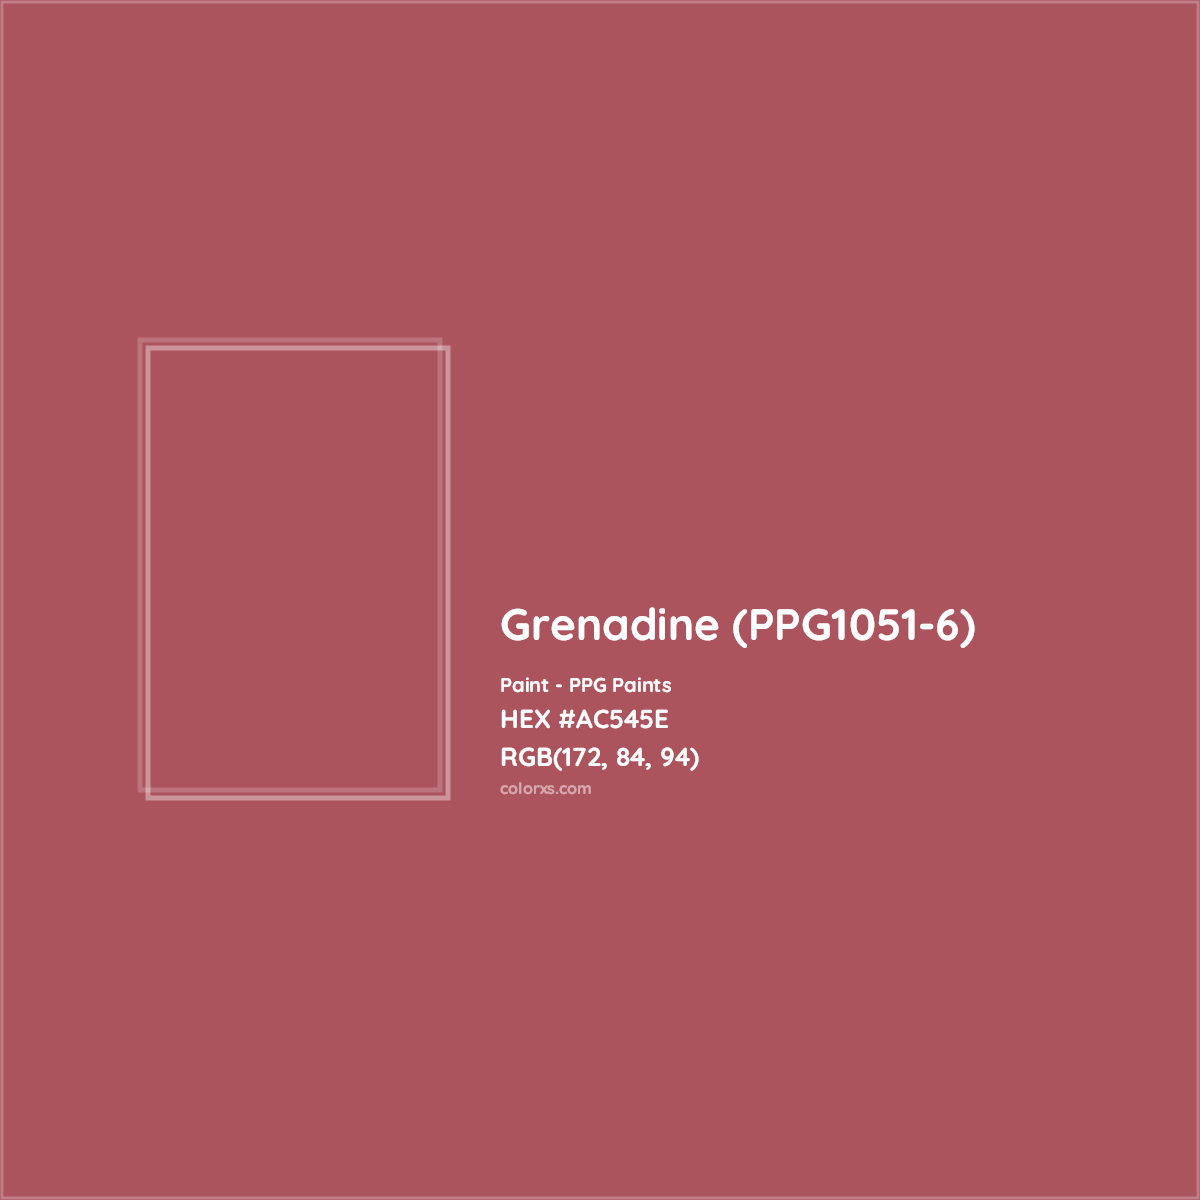 HEX #AC545E Grenadine (PPG1051-6) Paint PPG Paints - Color Code